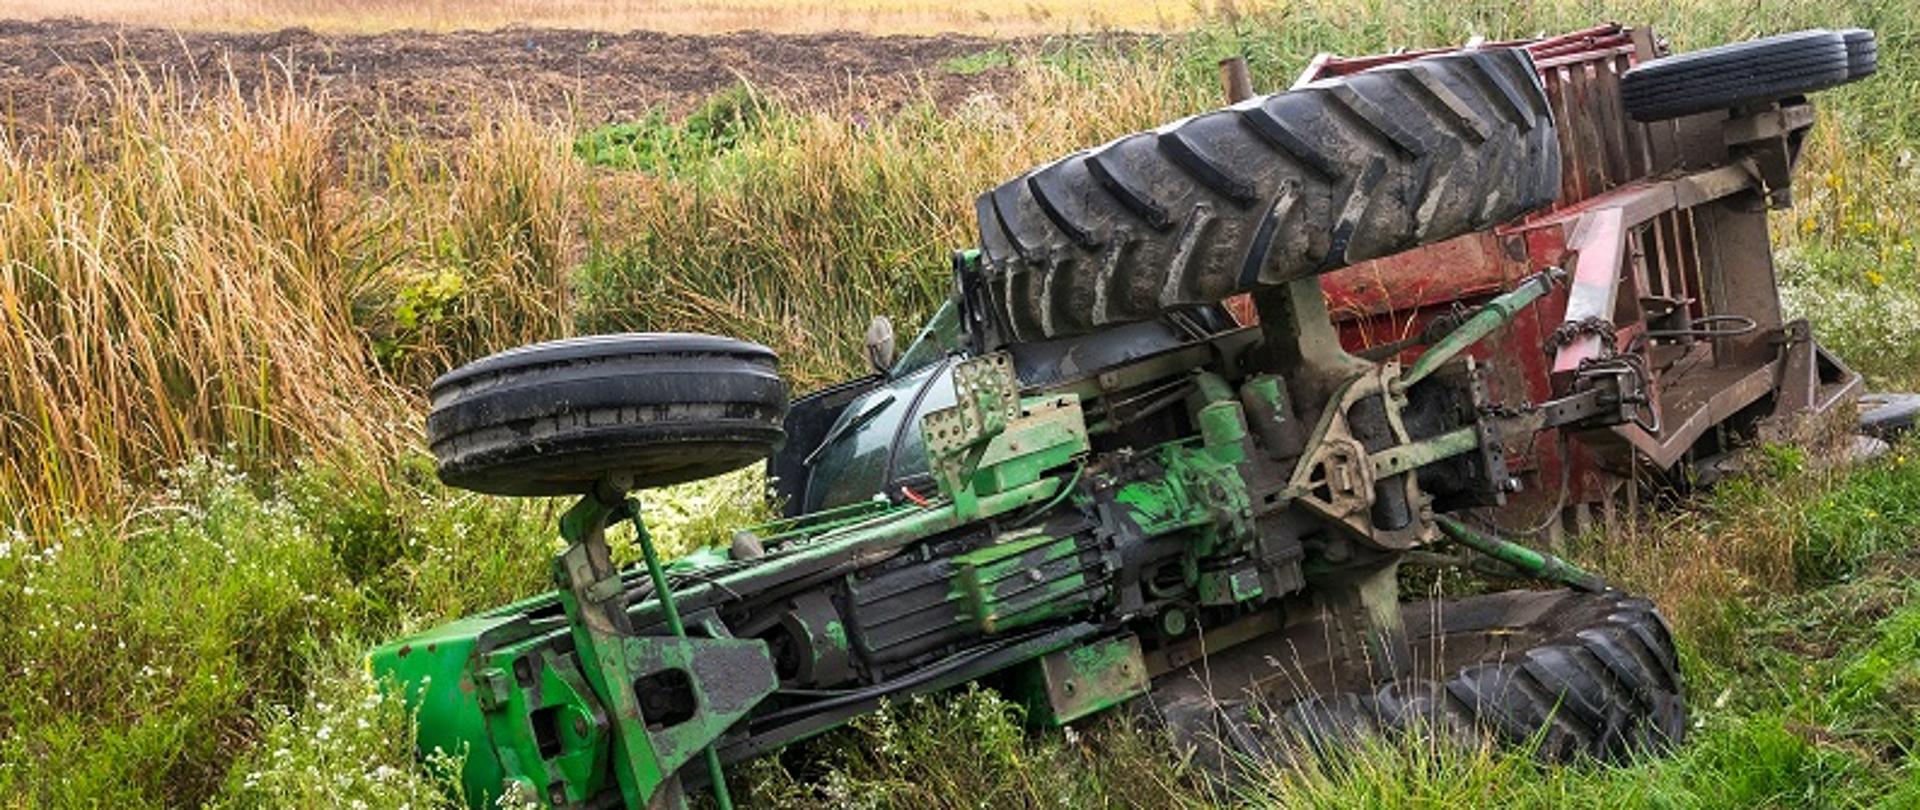 przewrócony traktor na polu